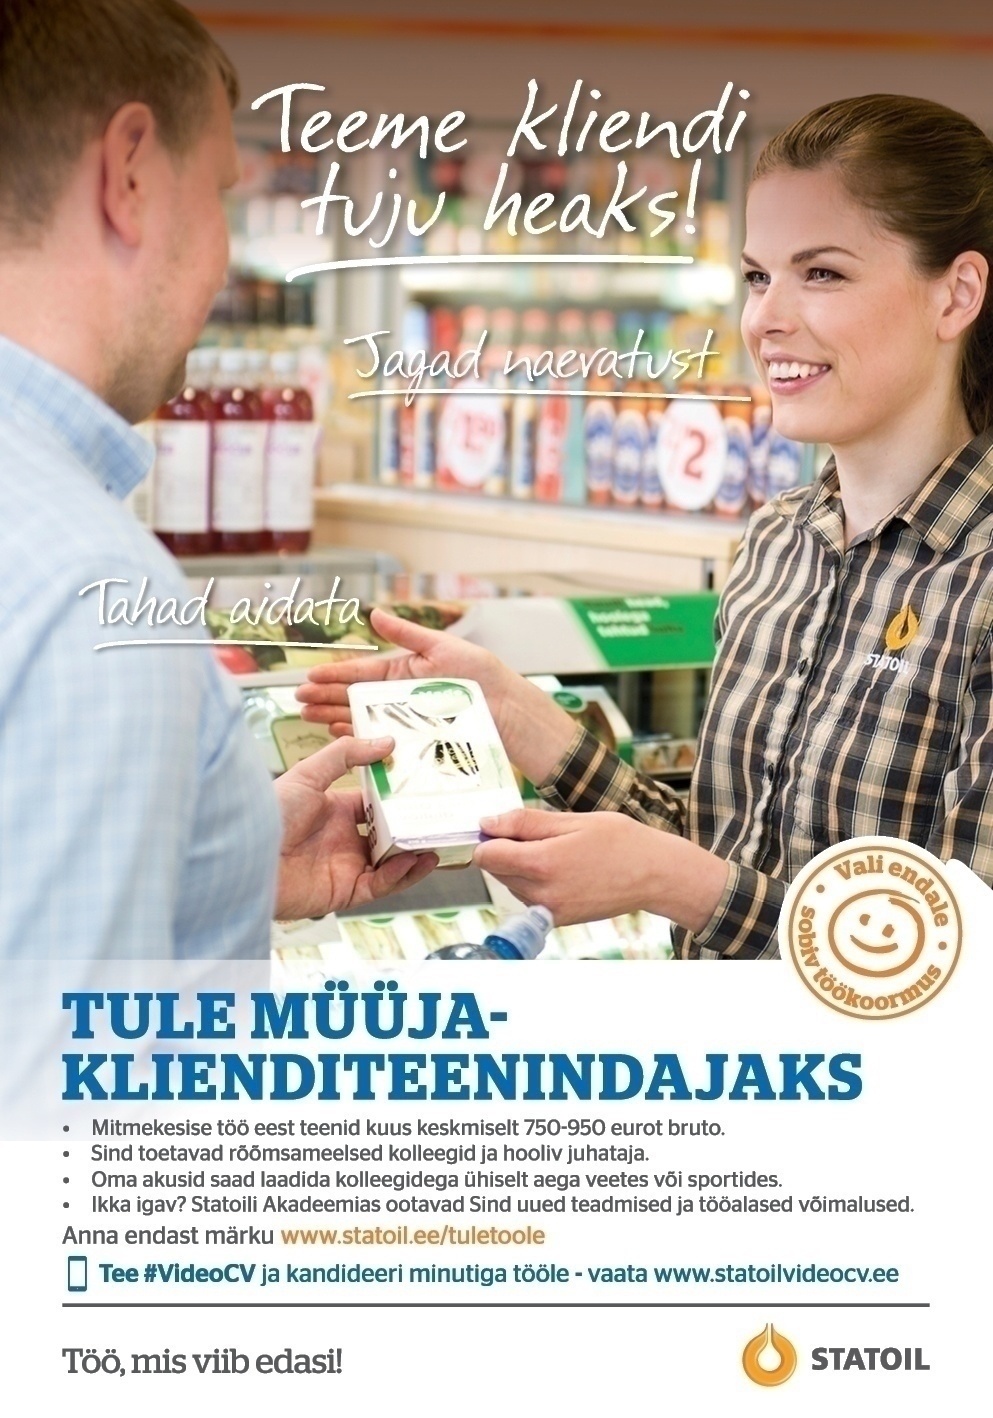 Circle K Eesti AS Müüja-klienditeenindaja Balti Jaama, Linnahalli teenindusjaamadesse 